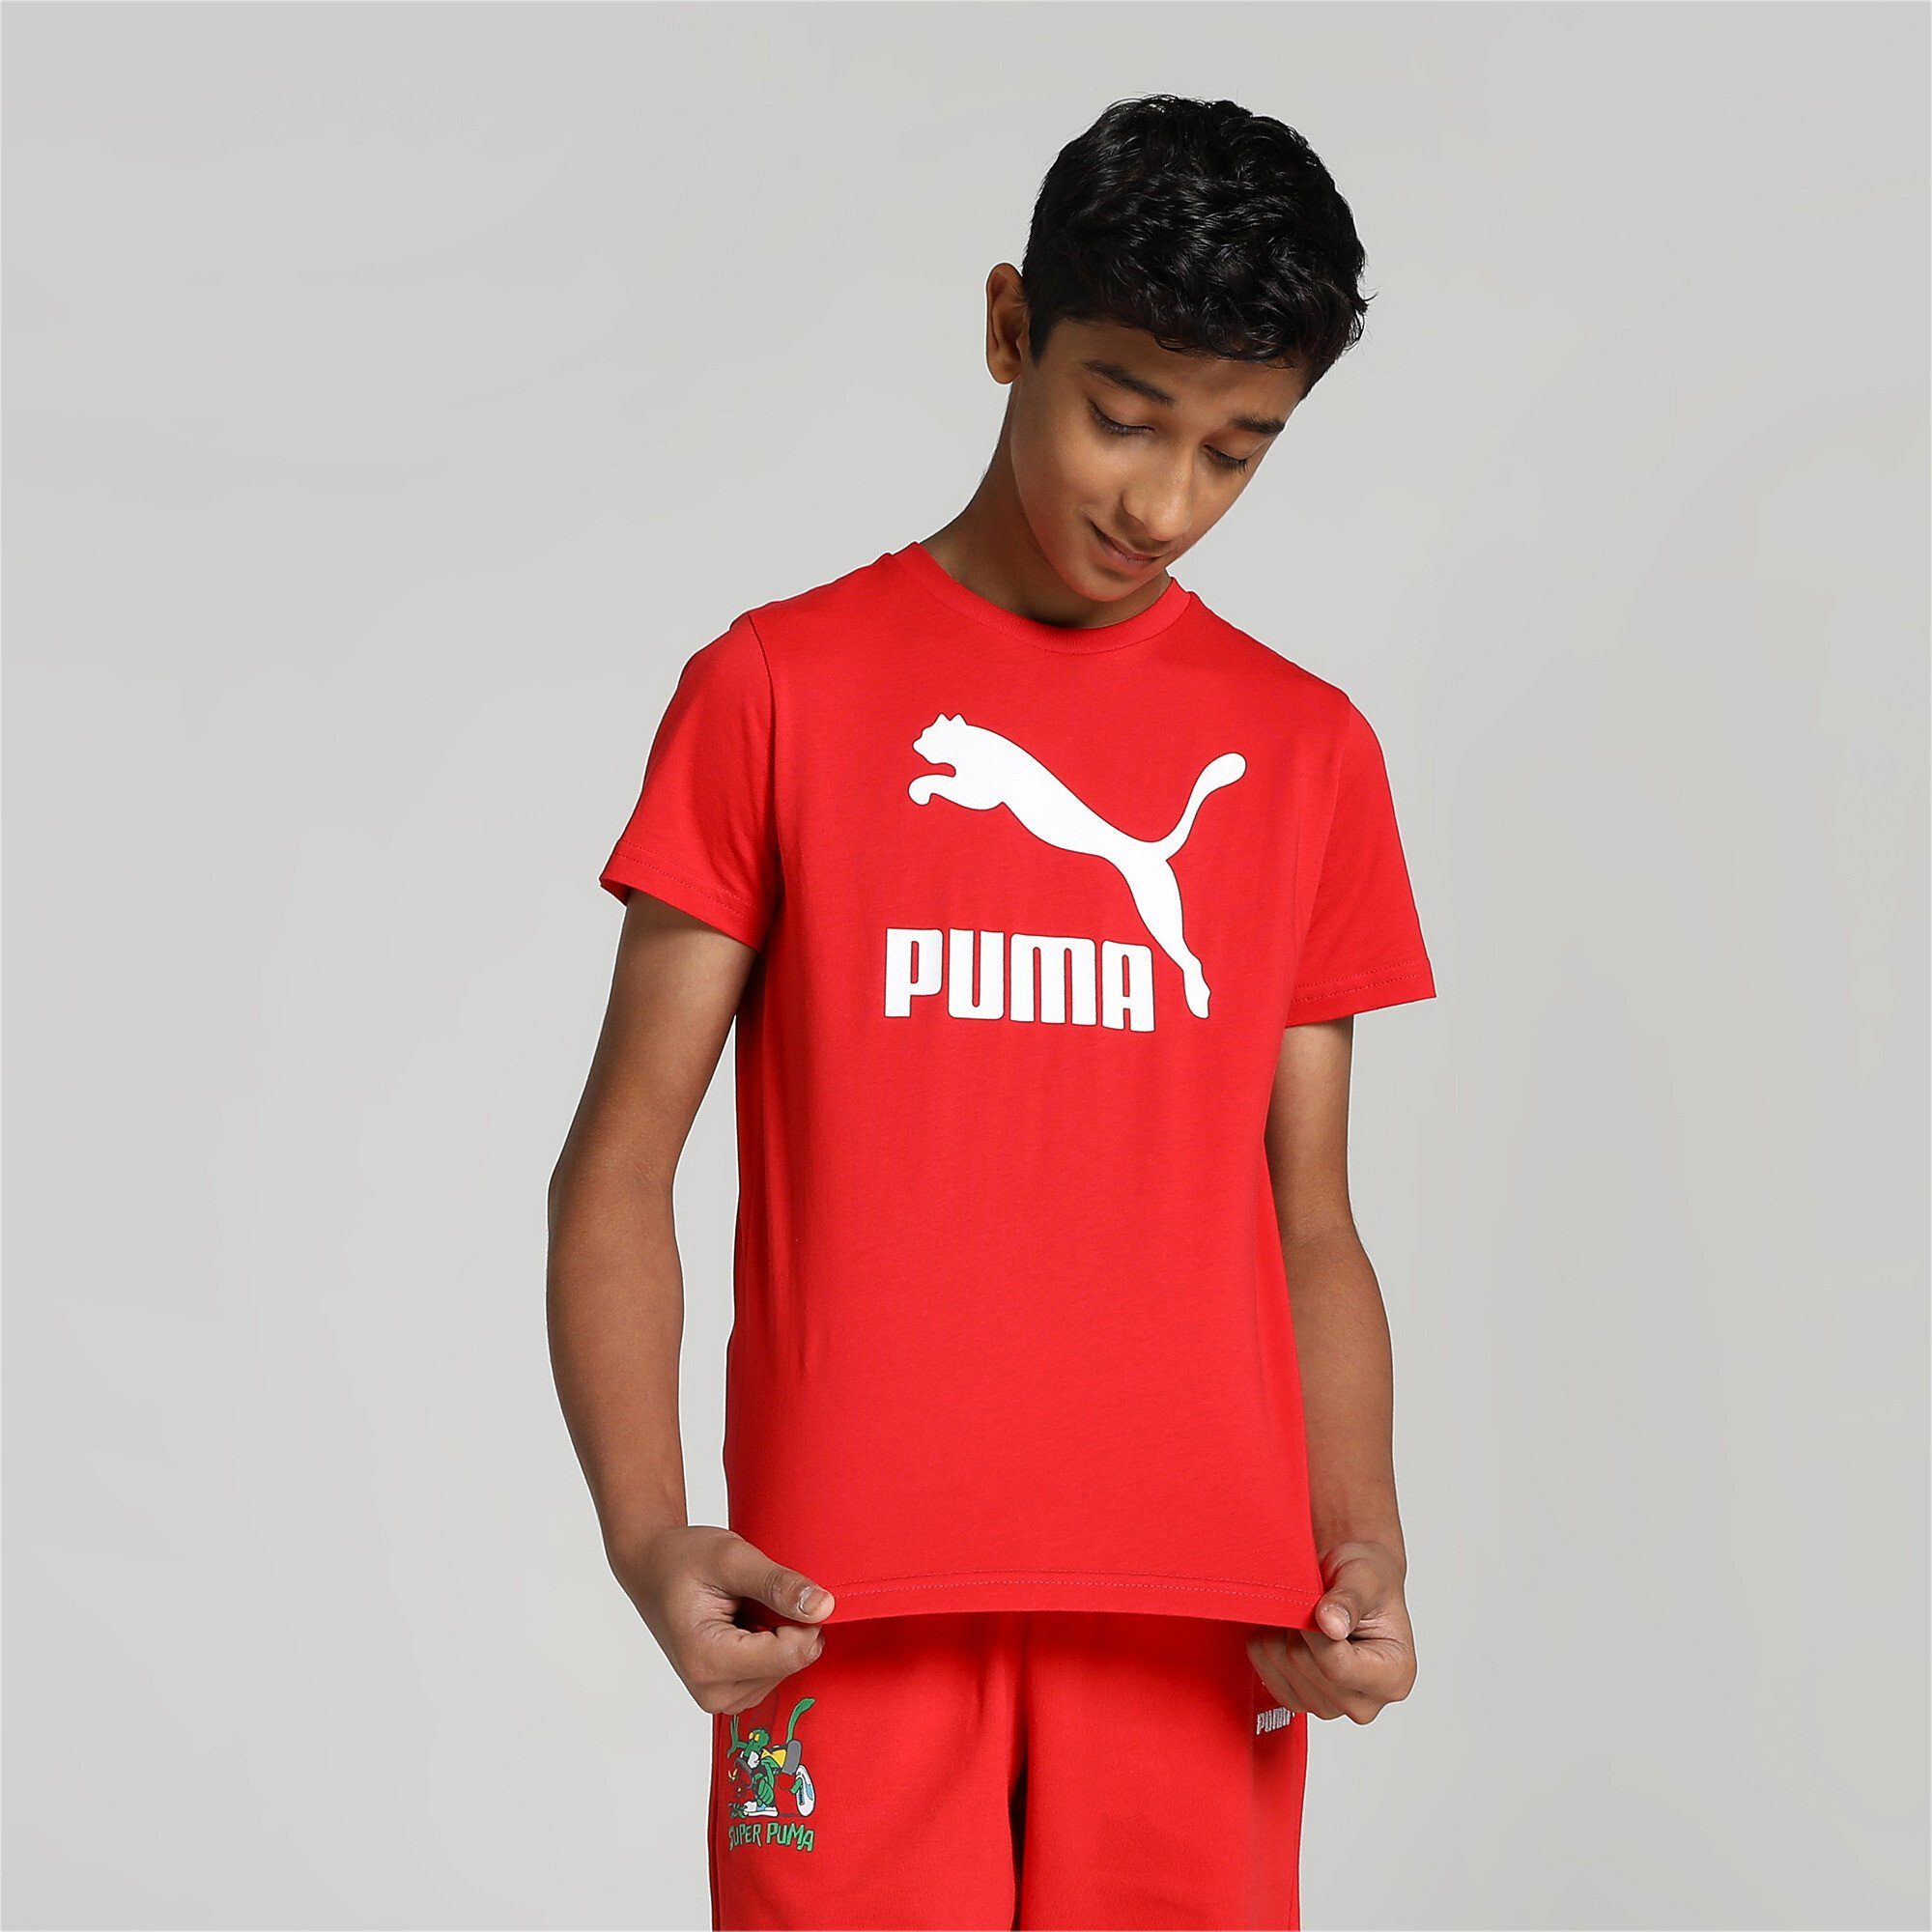 PUMA T-Shirt High Jungen Classics B T-Shirt Red Risk